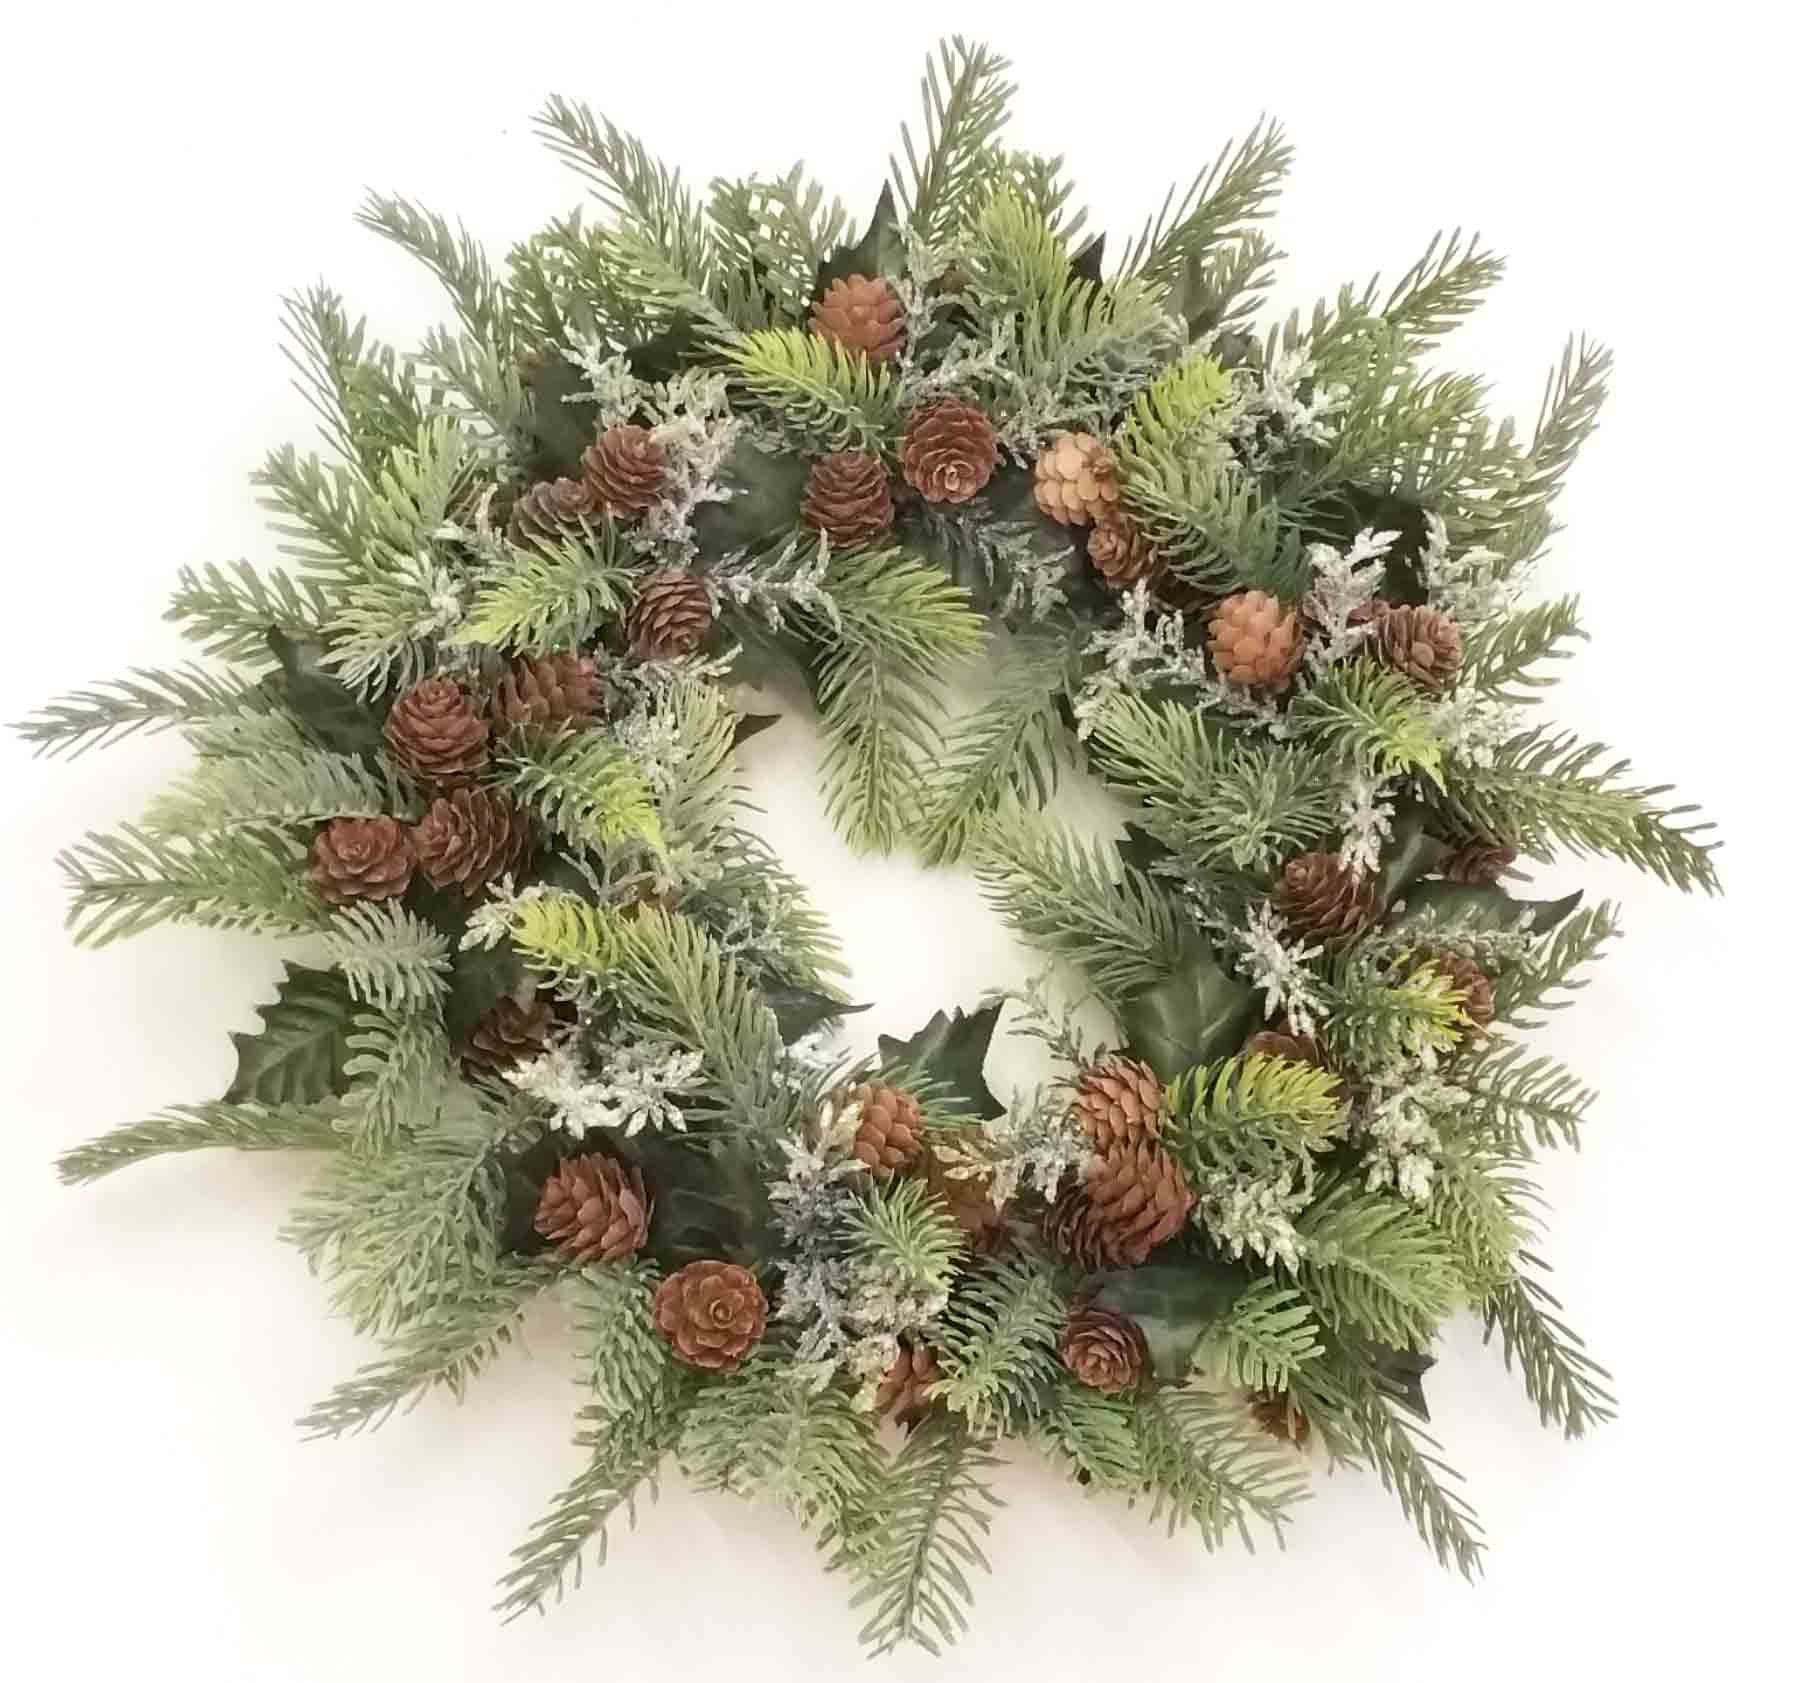 XW27 - 18" Plastic Pine Wreath - 15.45 ea